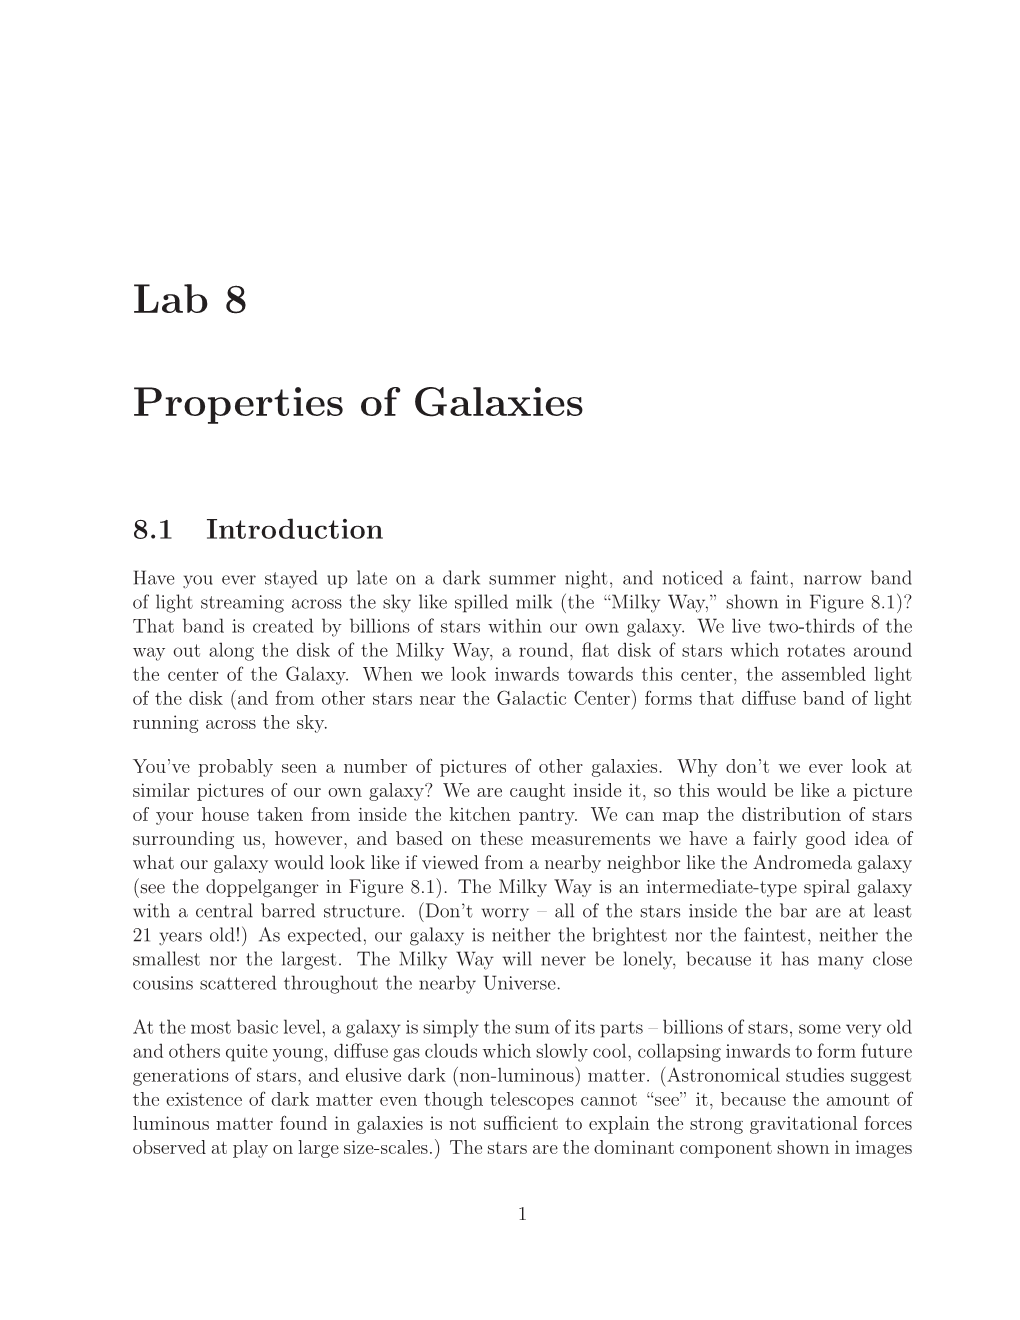 Lab 8 Properties of Galaxies